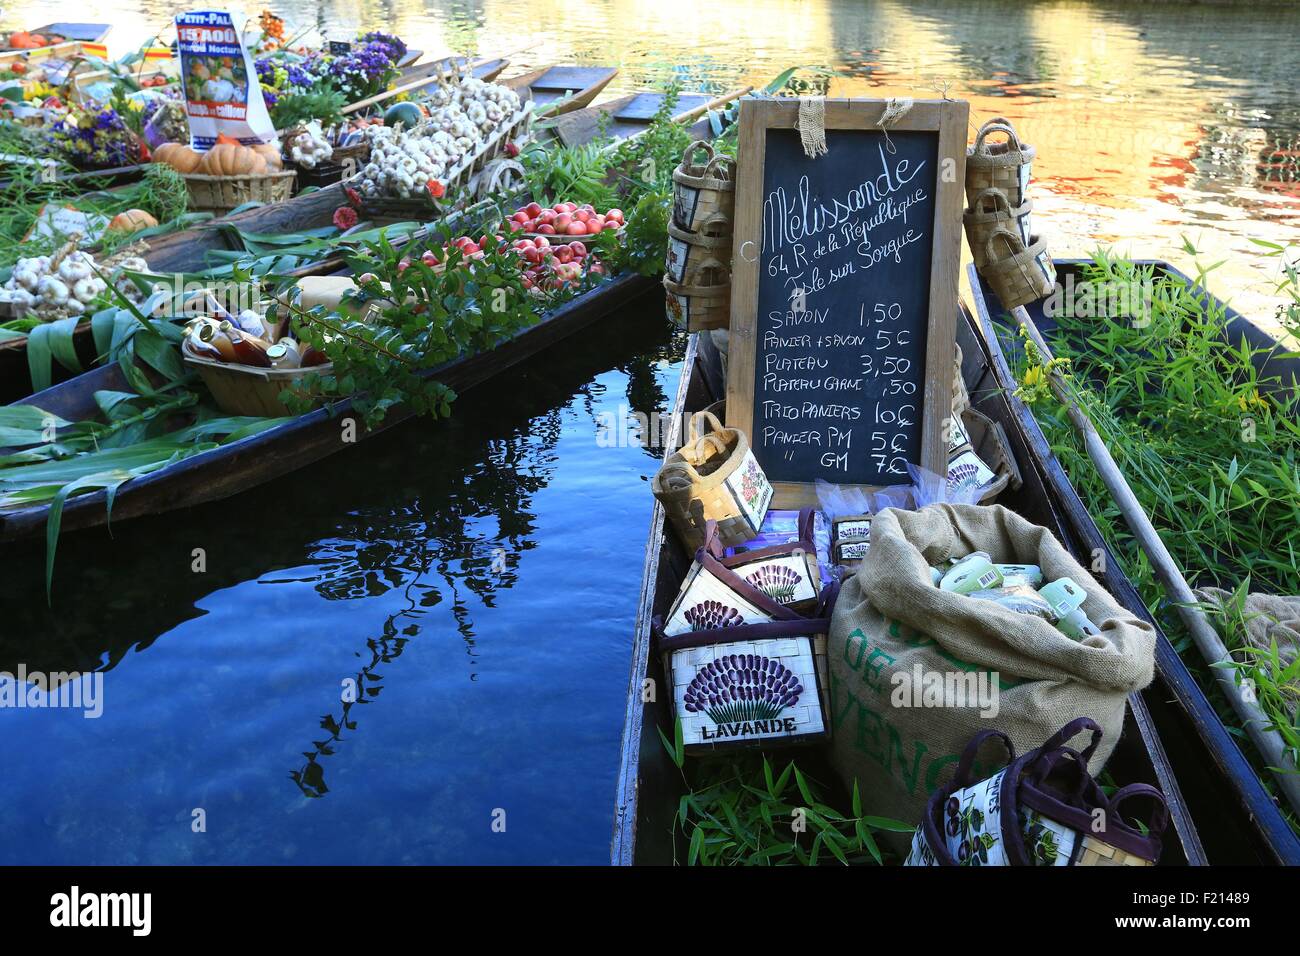 France, Vaucluse, L'Isle sur la Sorgue, quai Jean Jaures, floating market  on August 3, negochins sur la Sorgue selling Provencal products Stock Photo  - Alamy